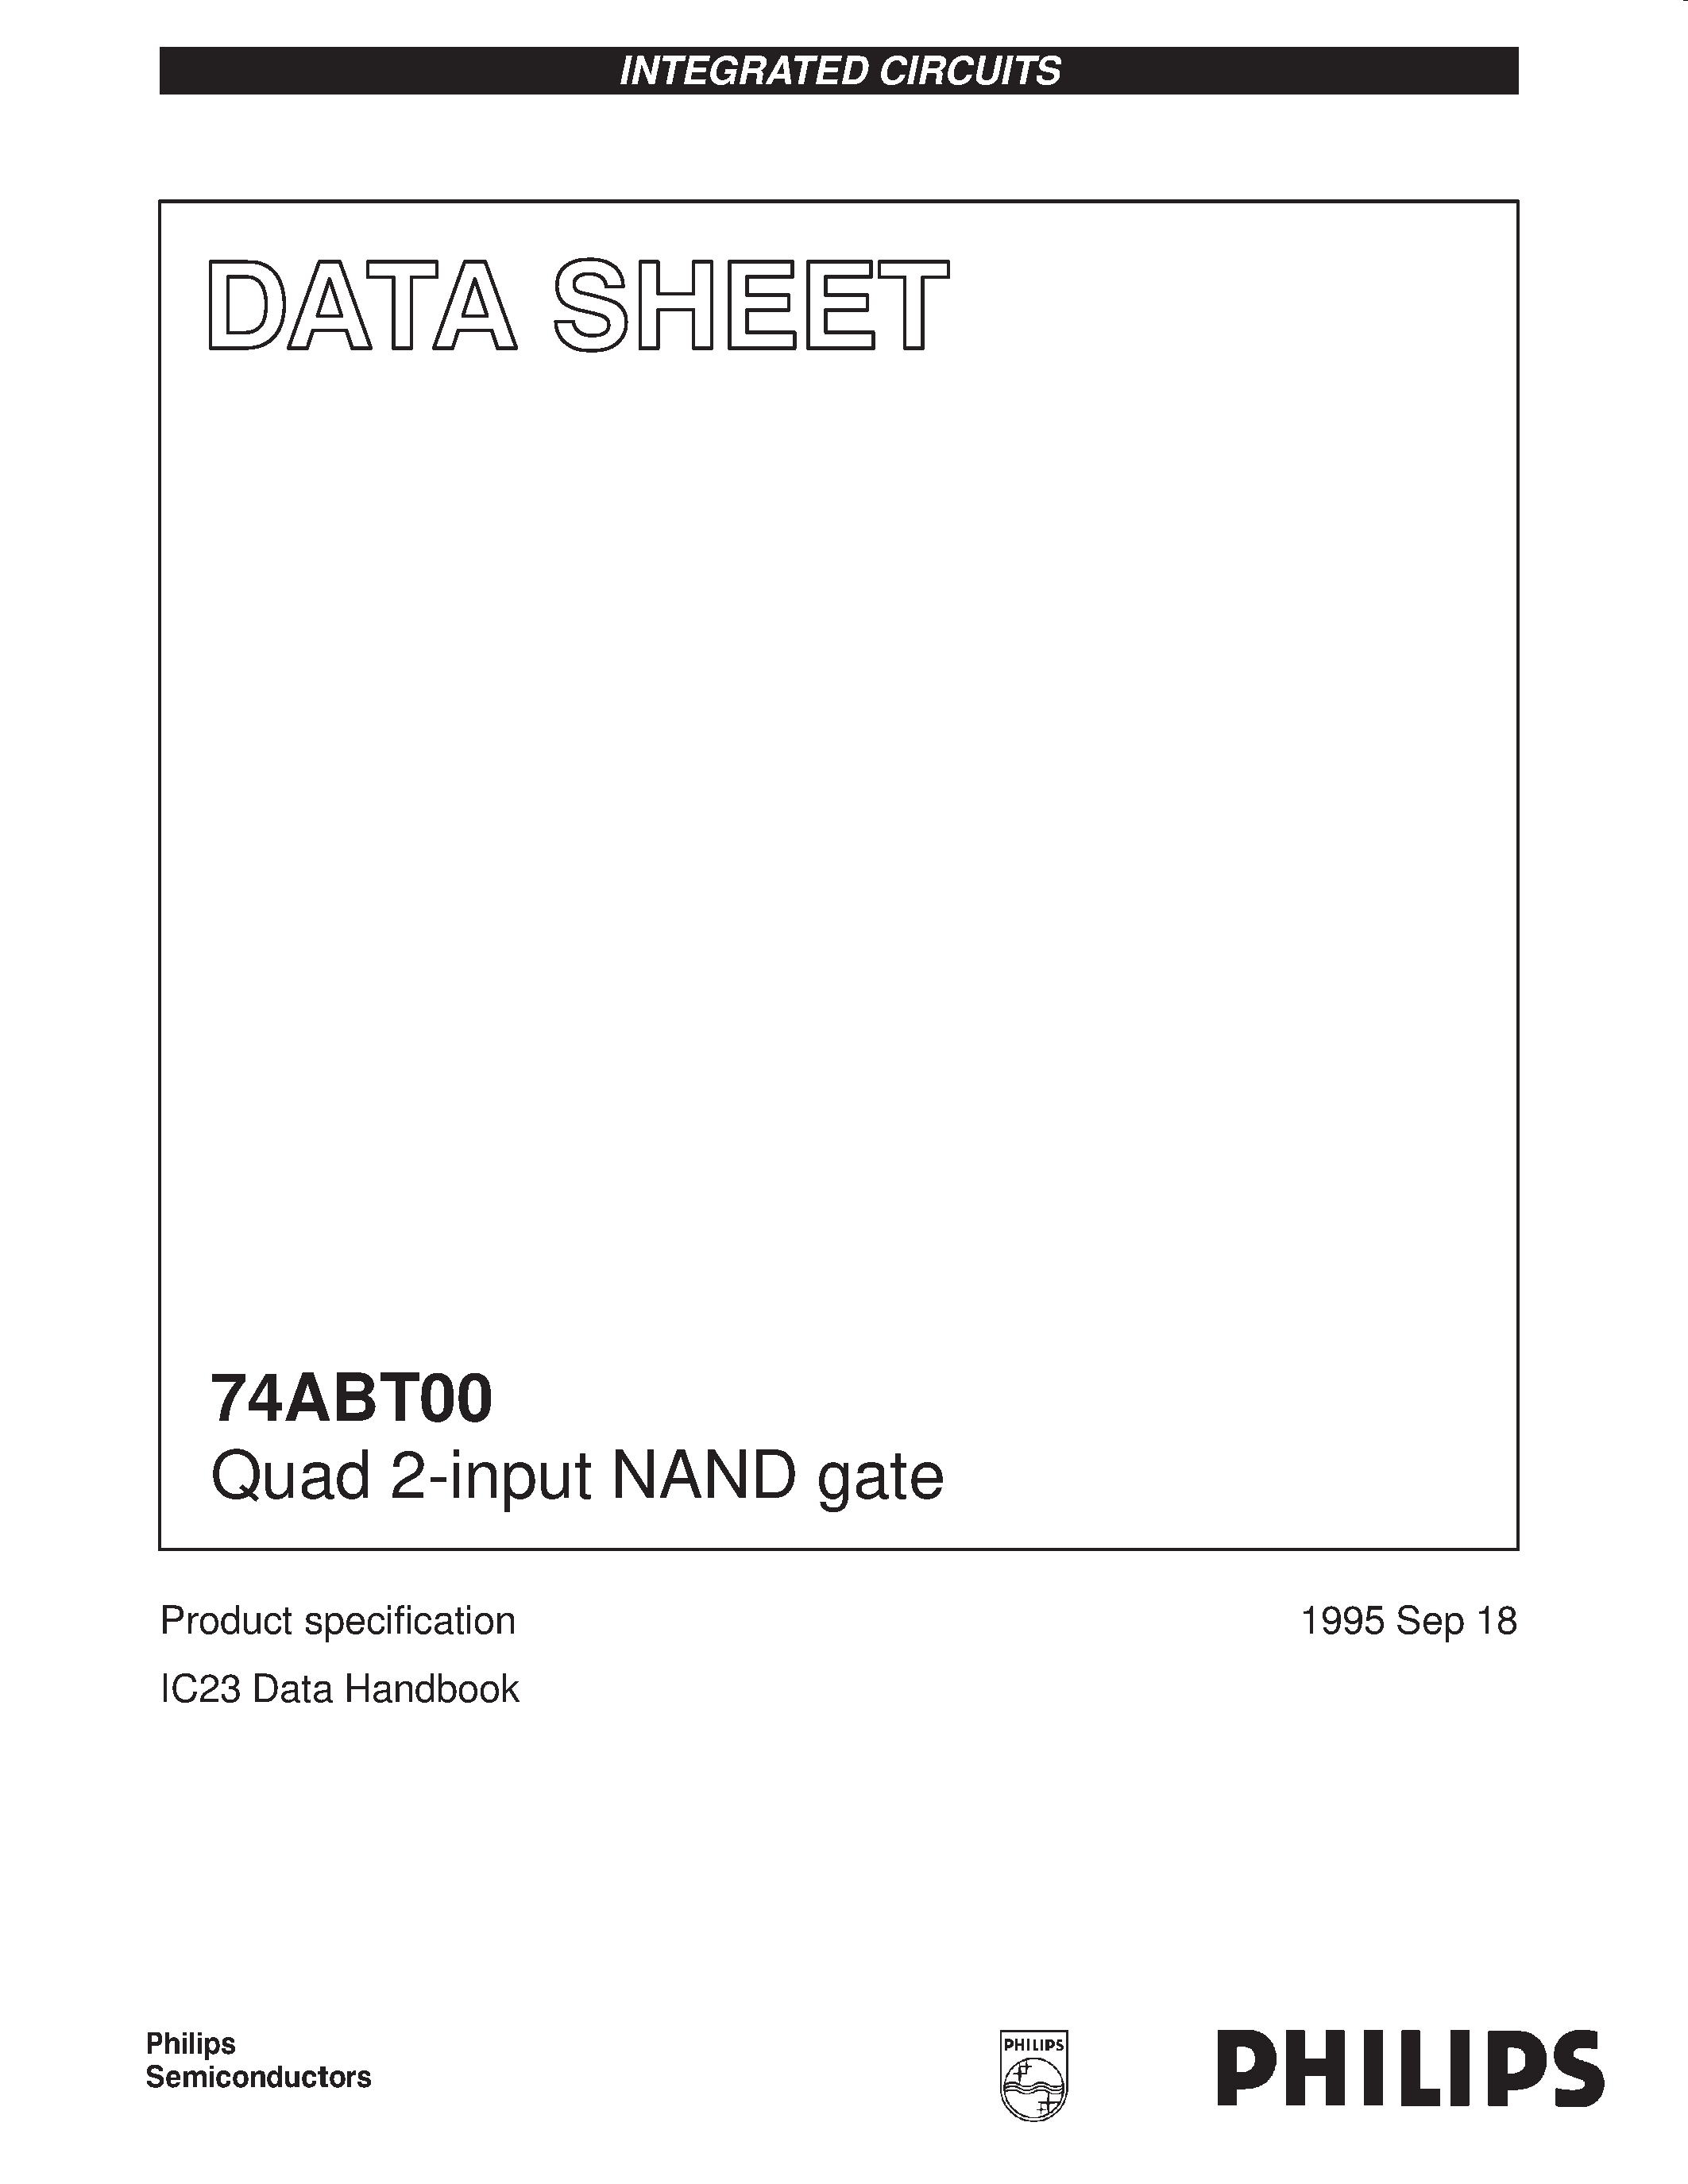 Даташит 74ABT00N - Quad 2-input NAND gate страница 1